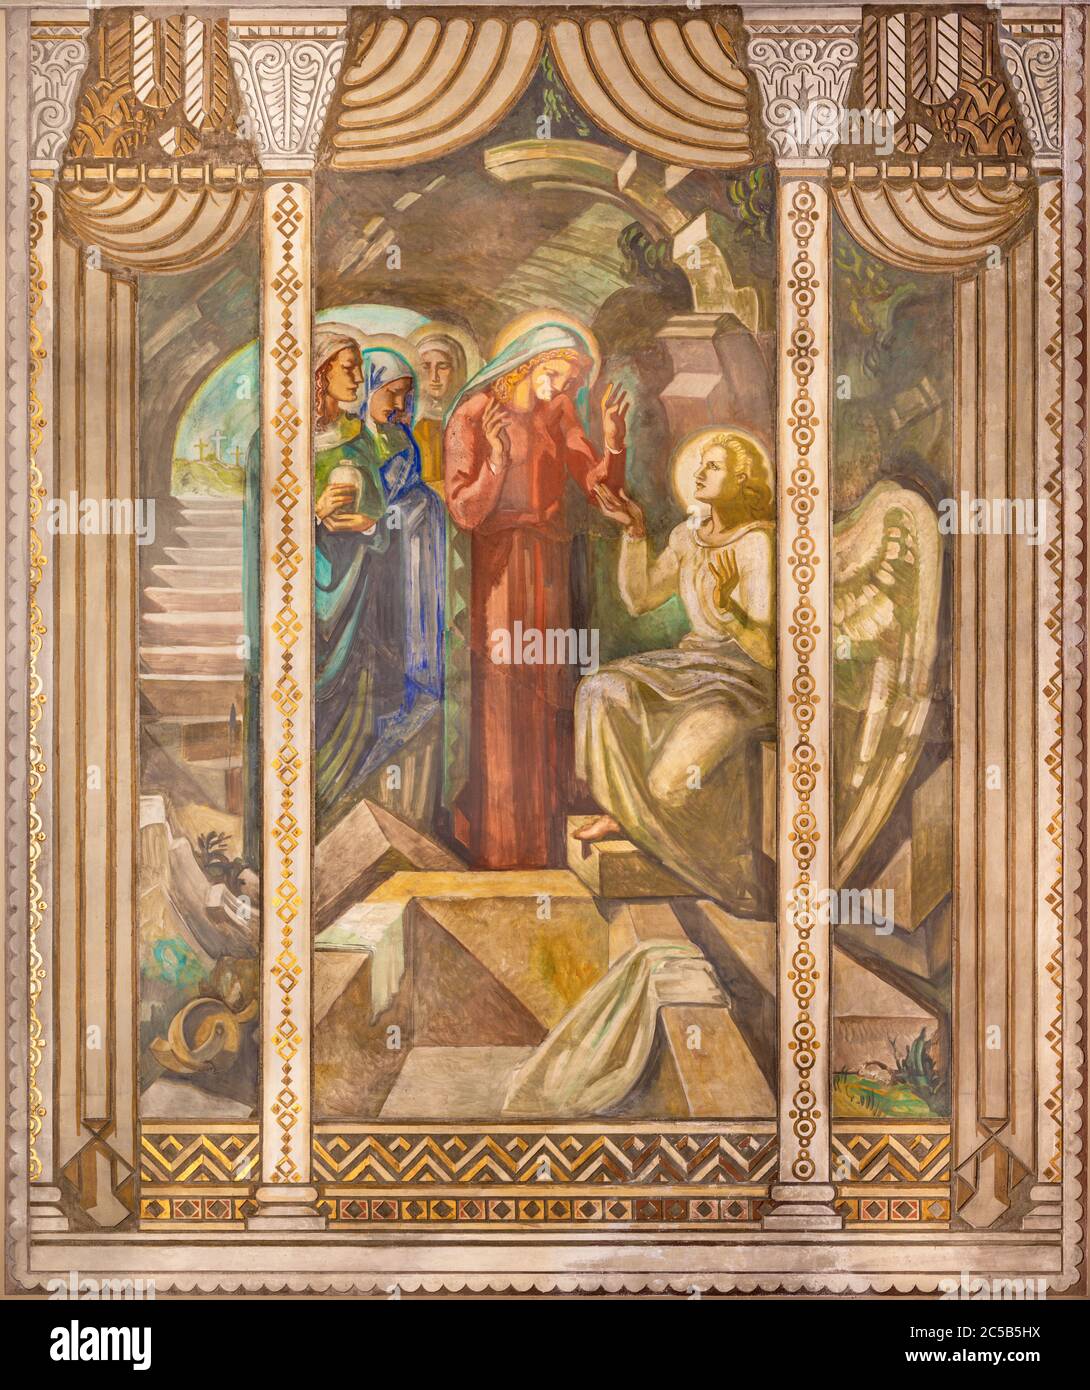 BARCELLONA, SPAGNA - 3 MARZO 2020: L'affresco di scena le donne alla tomba di Gesù nella chiesa Parroquia Santa Teresa de l'Infant Gesù. Foto Stock